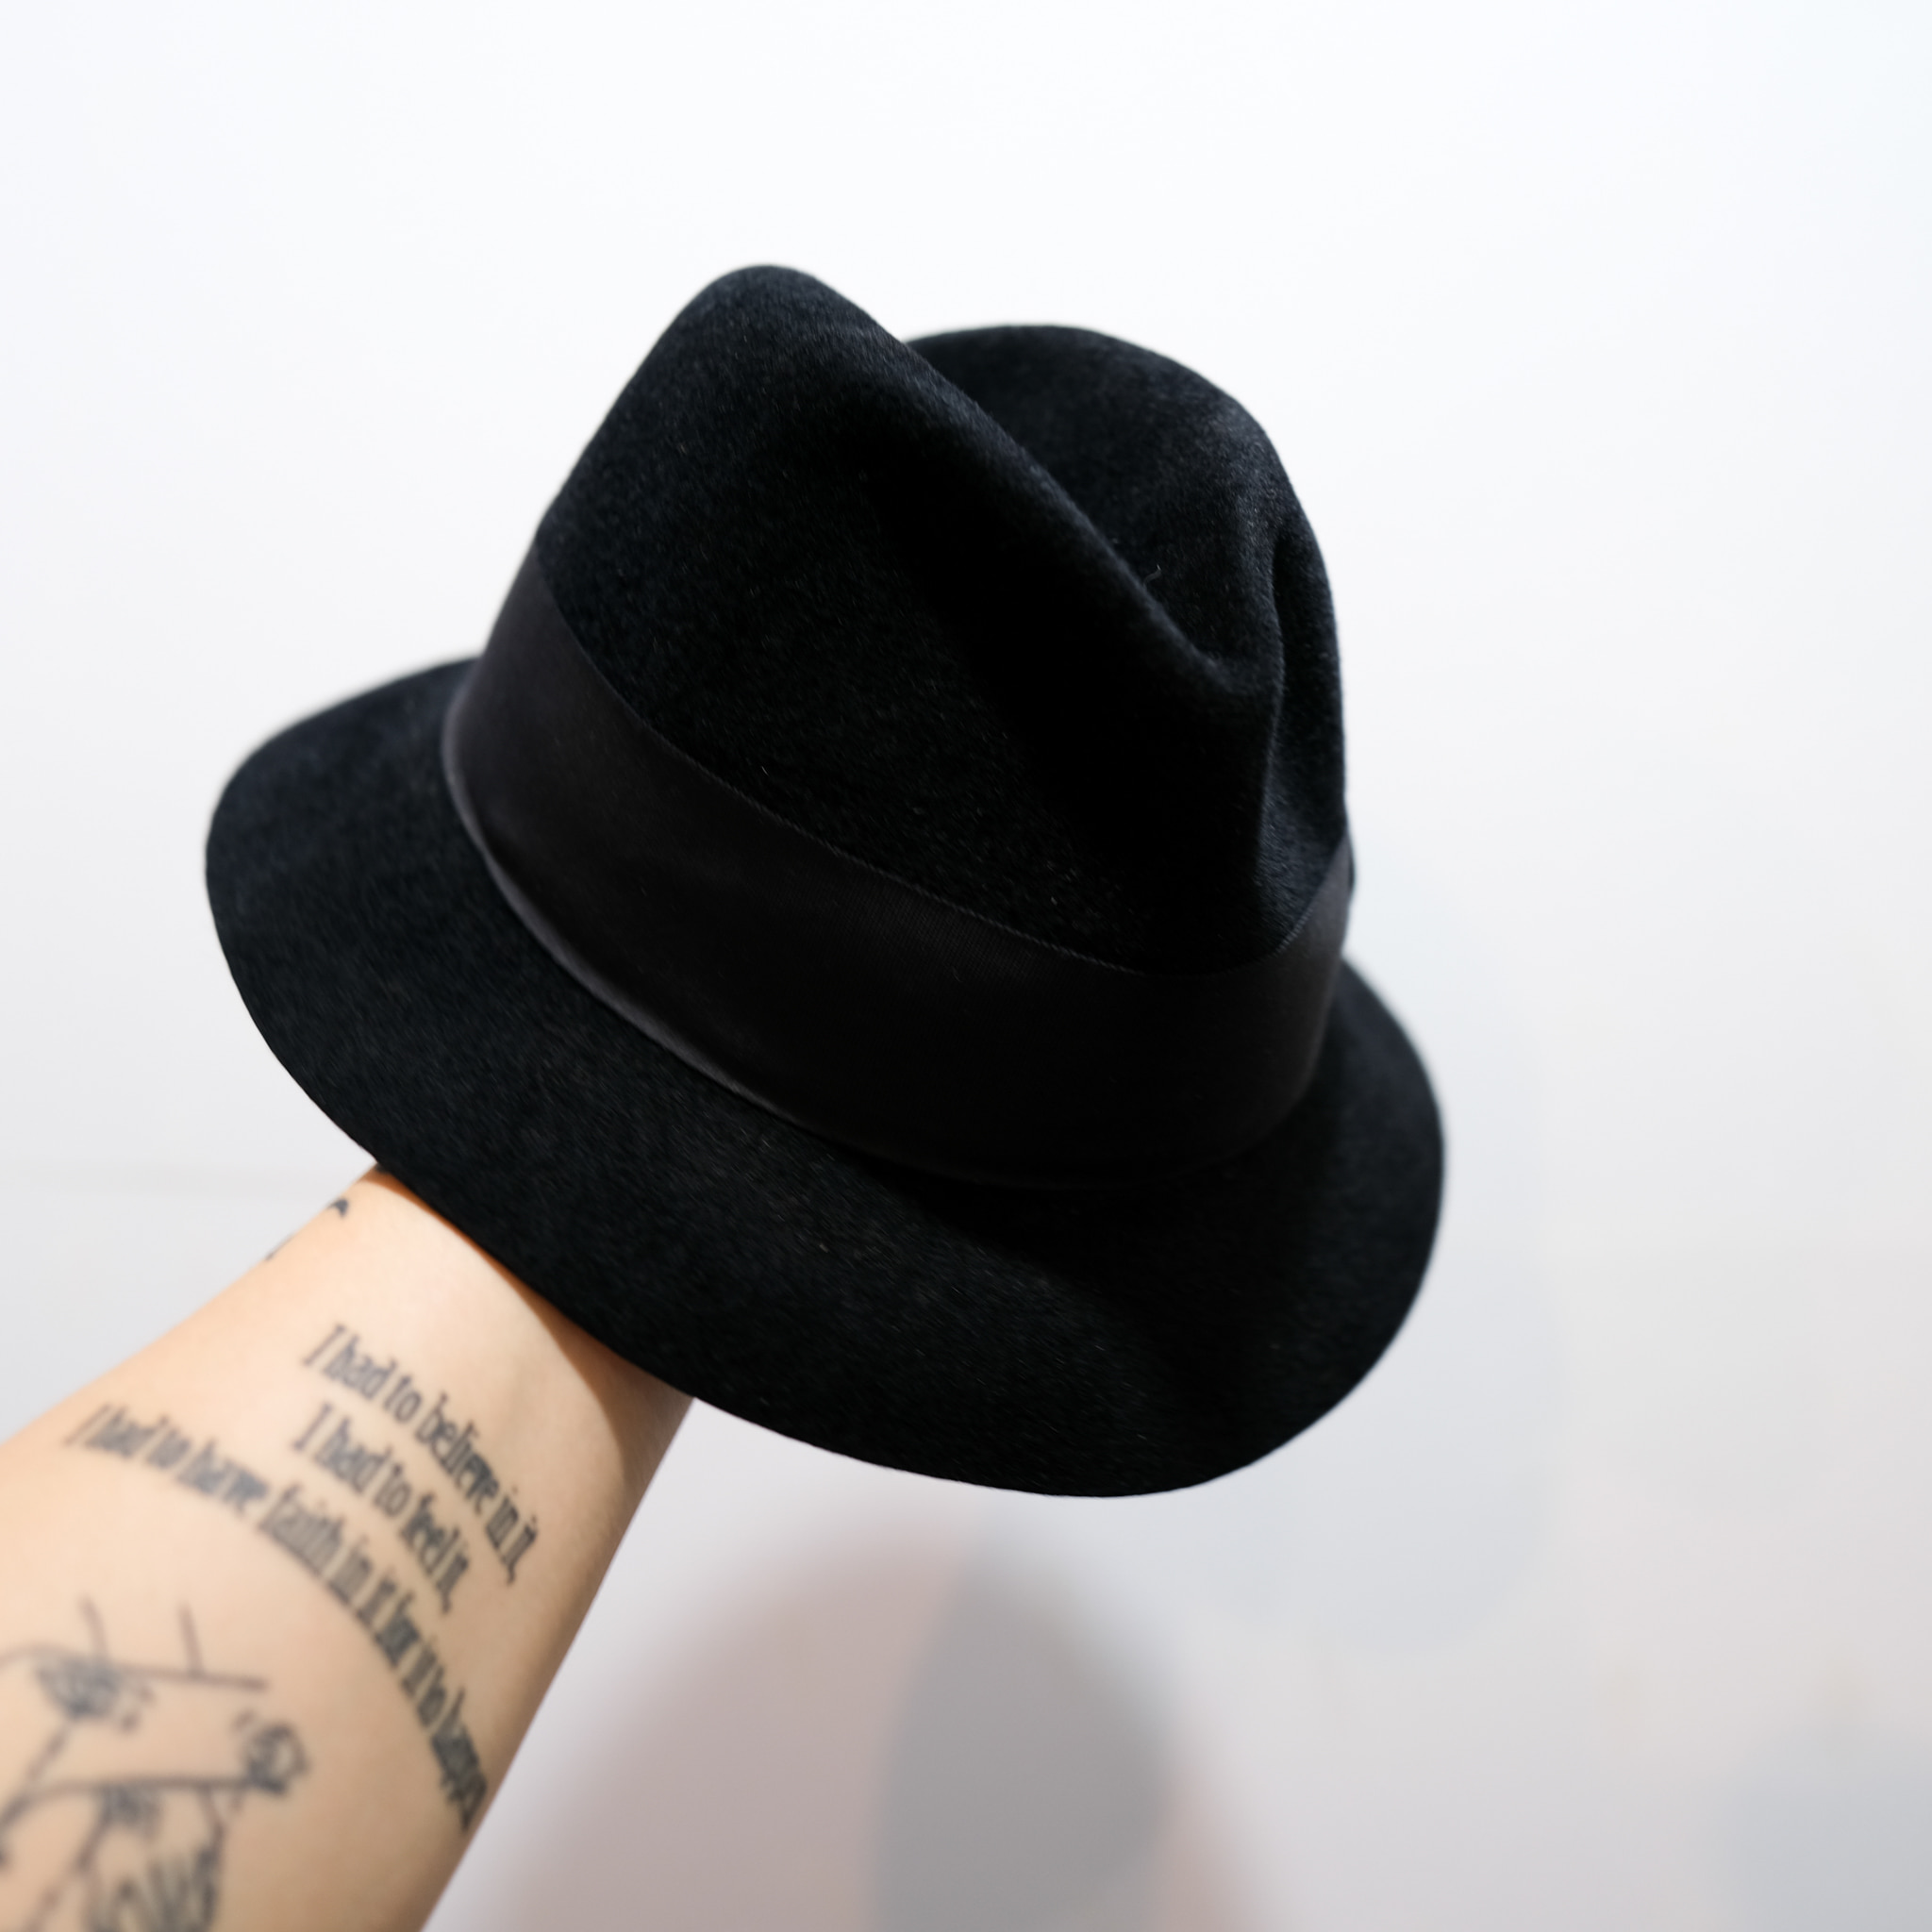 Gangsterville hat